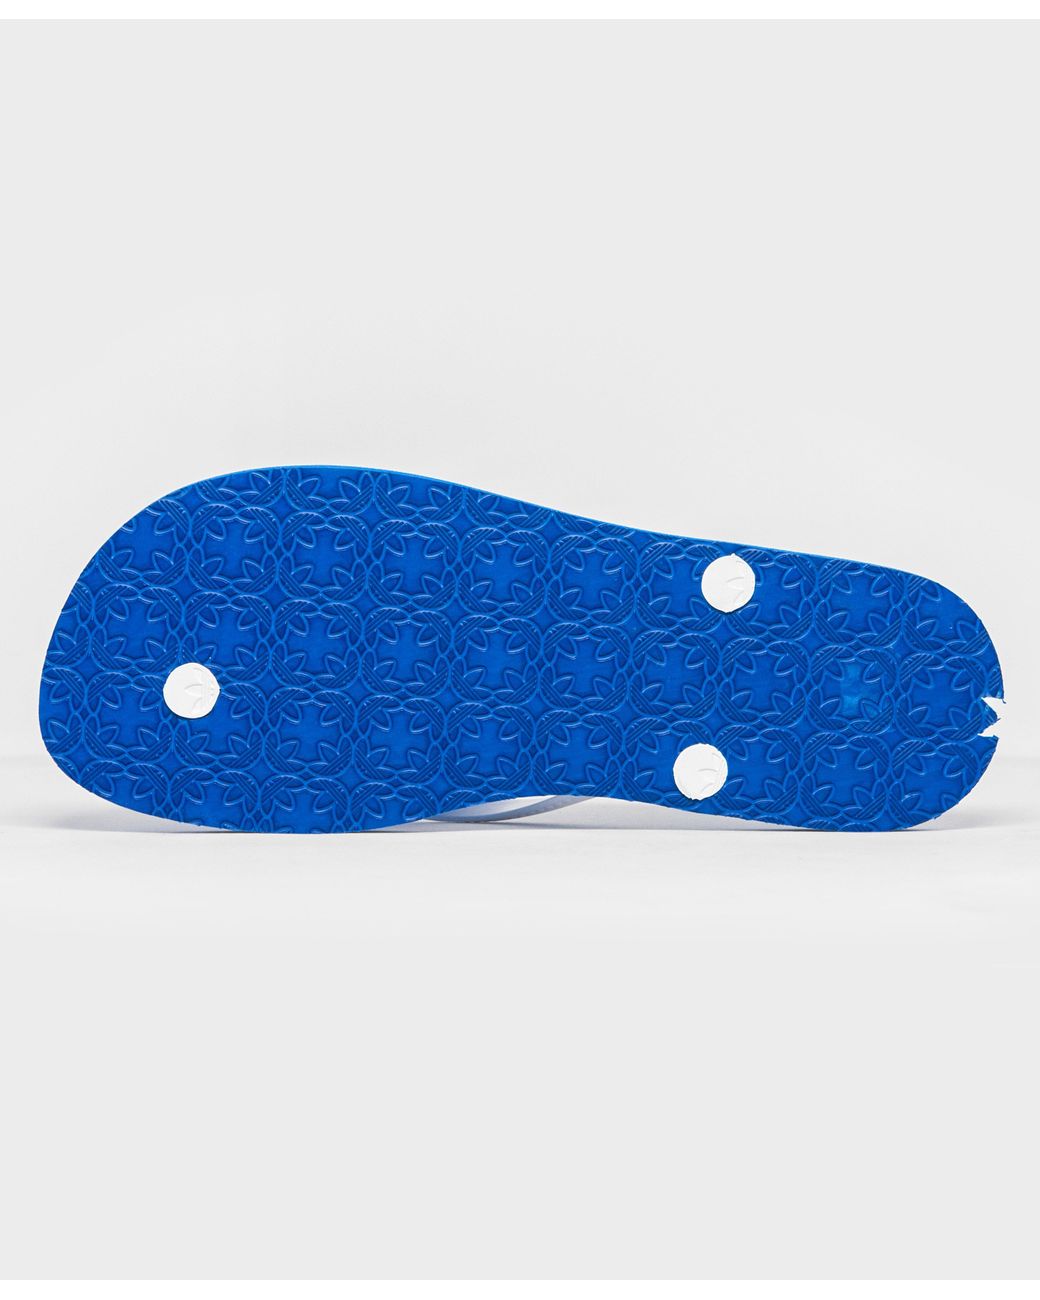 adidas Originals Adi Sun Flip Flops in Blue | Lyst